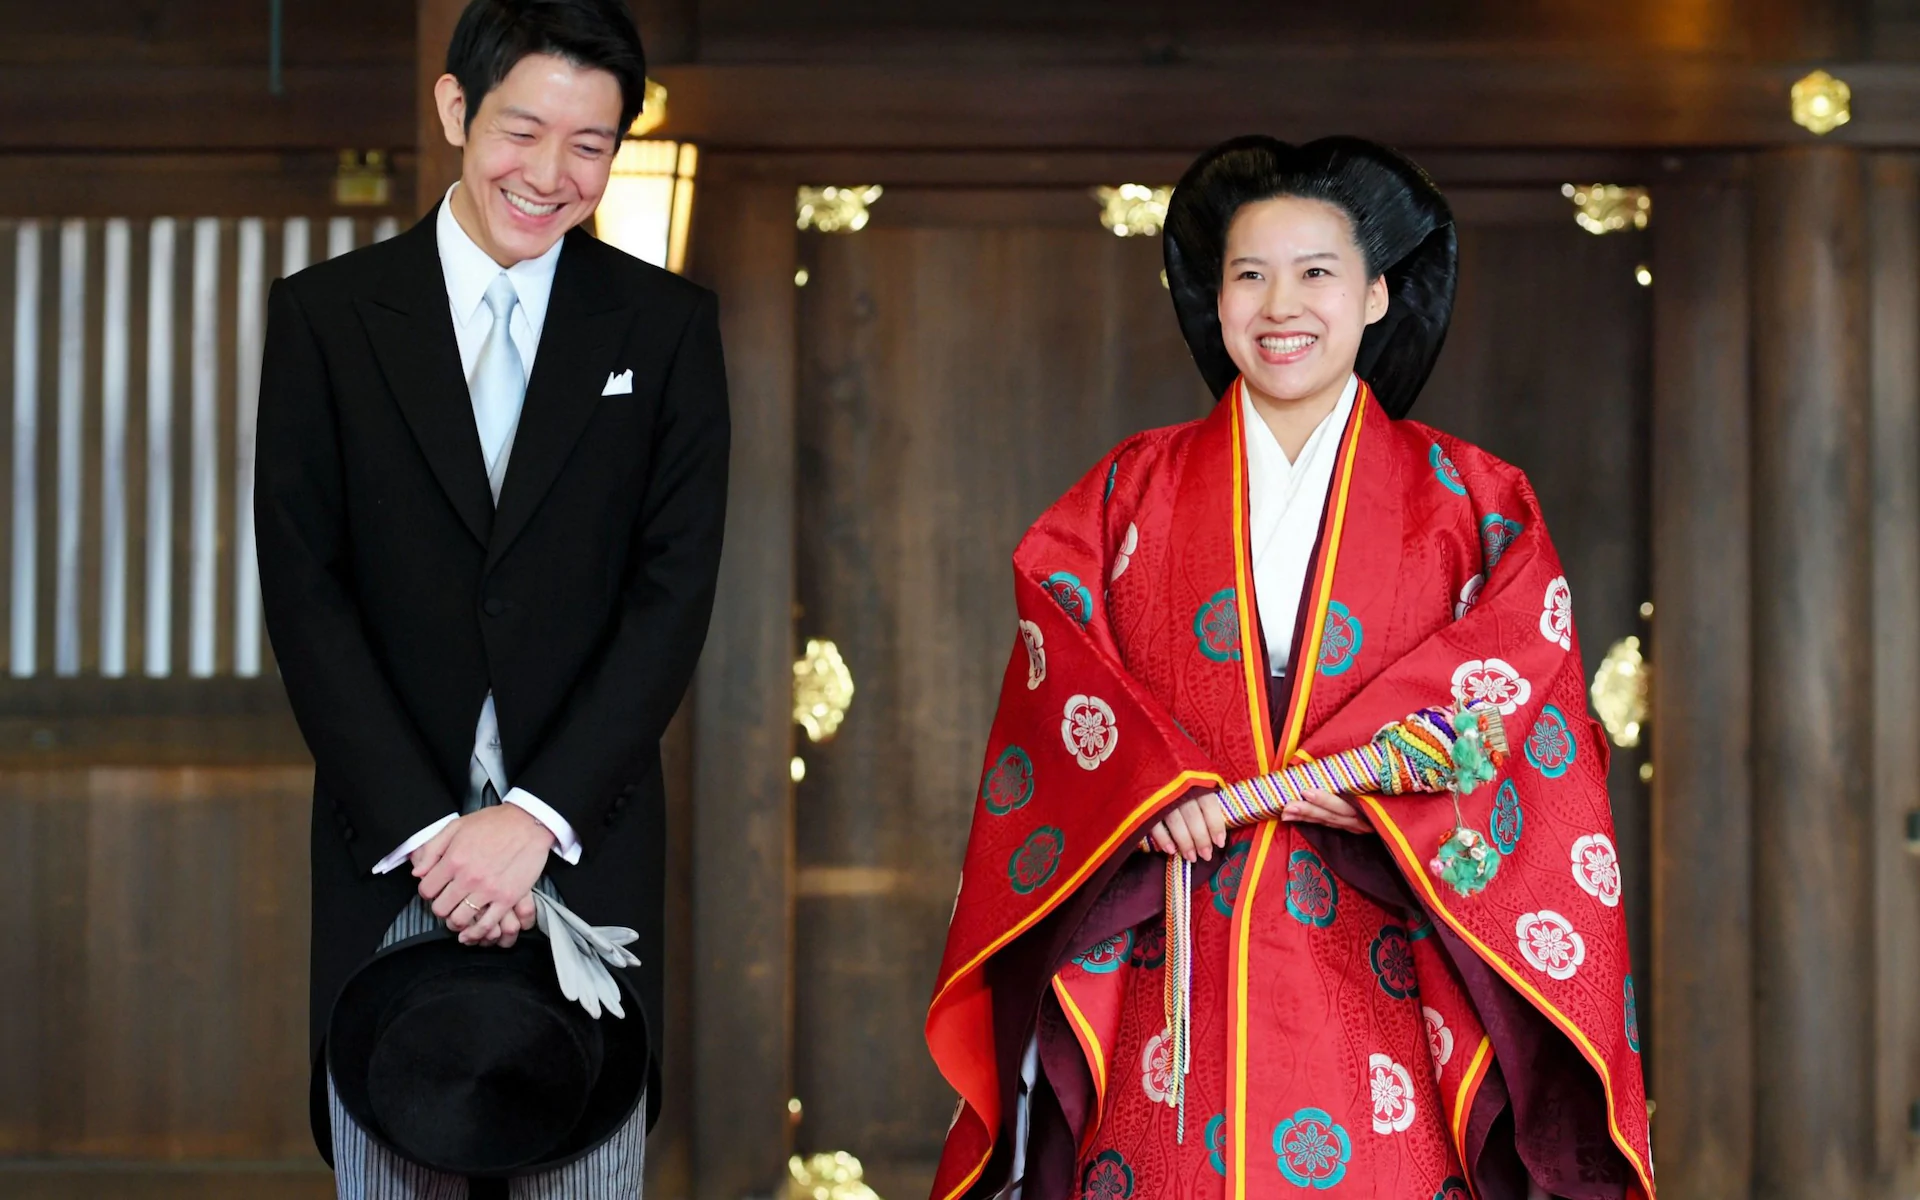 Japan’s princess Ayako gives up royal status as she marries a commoner